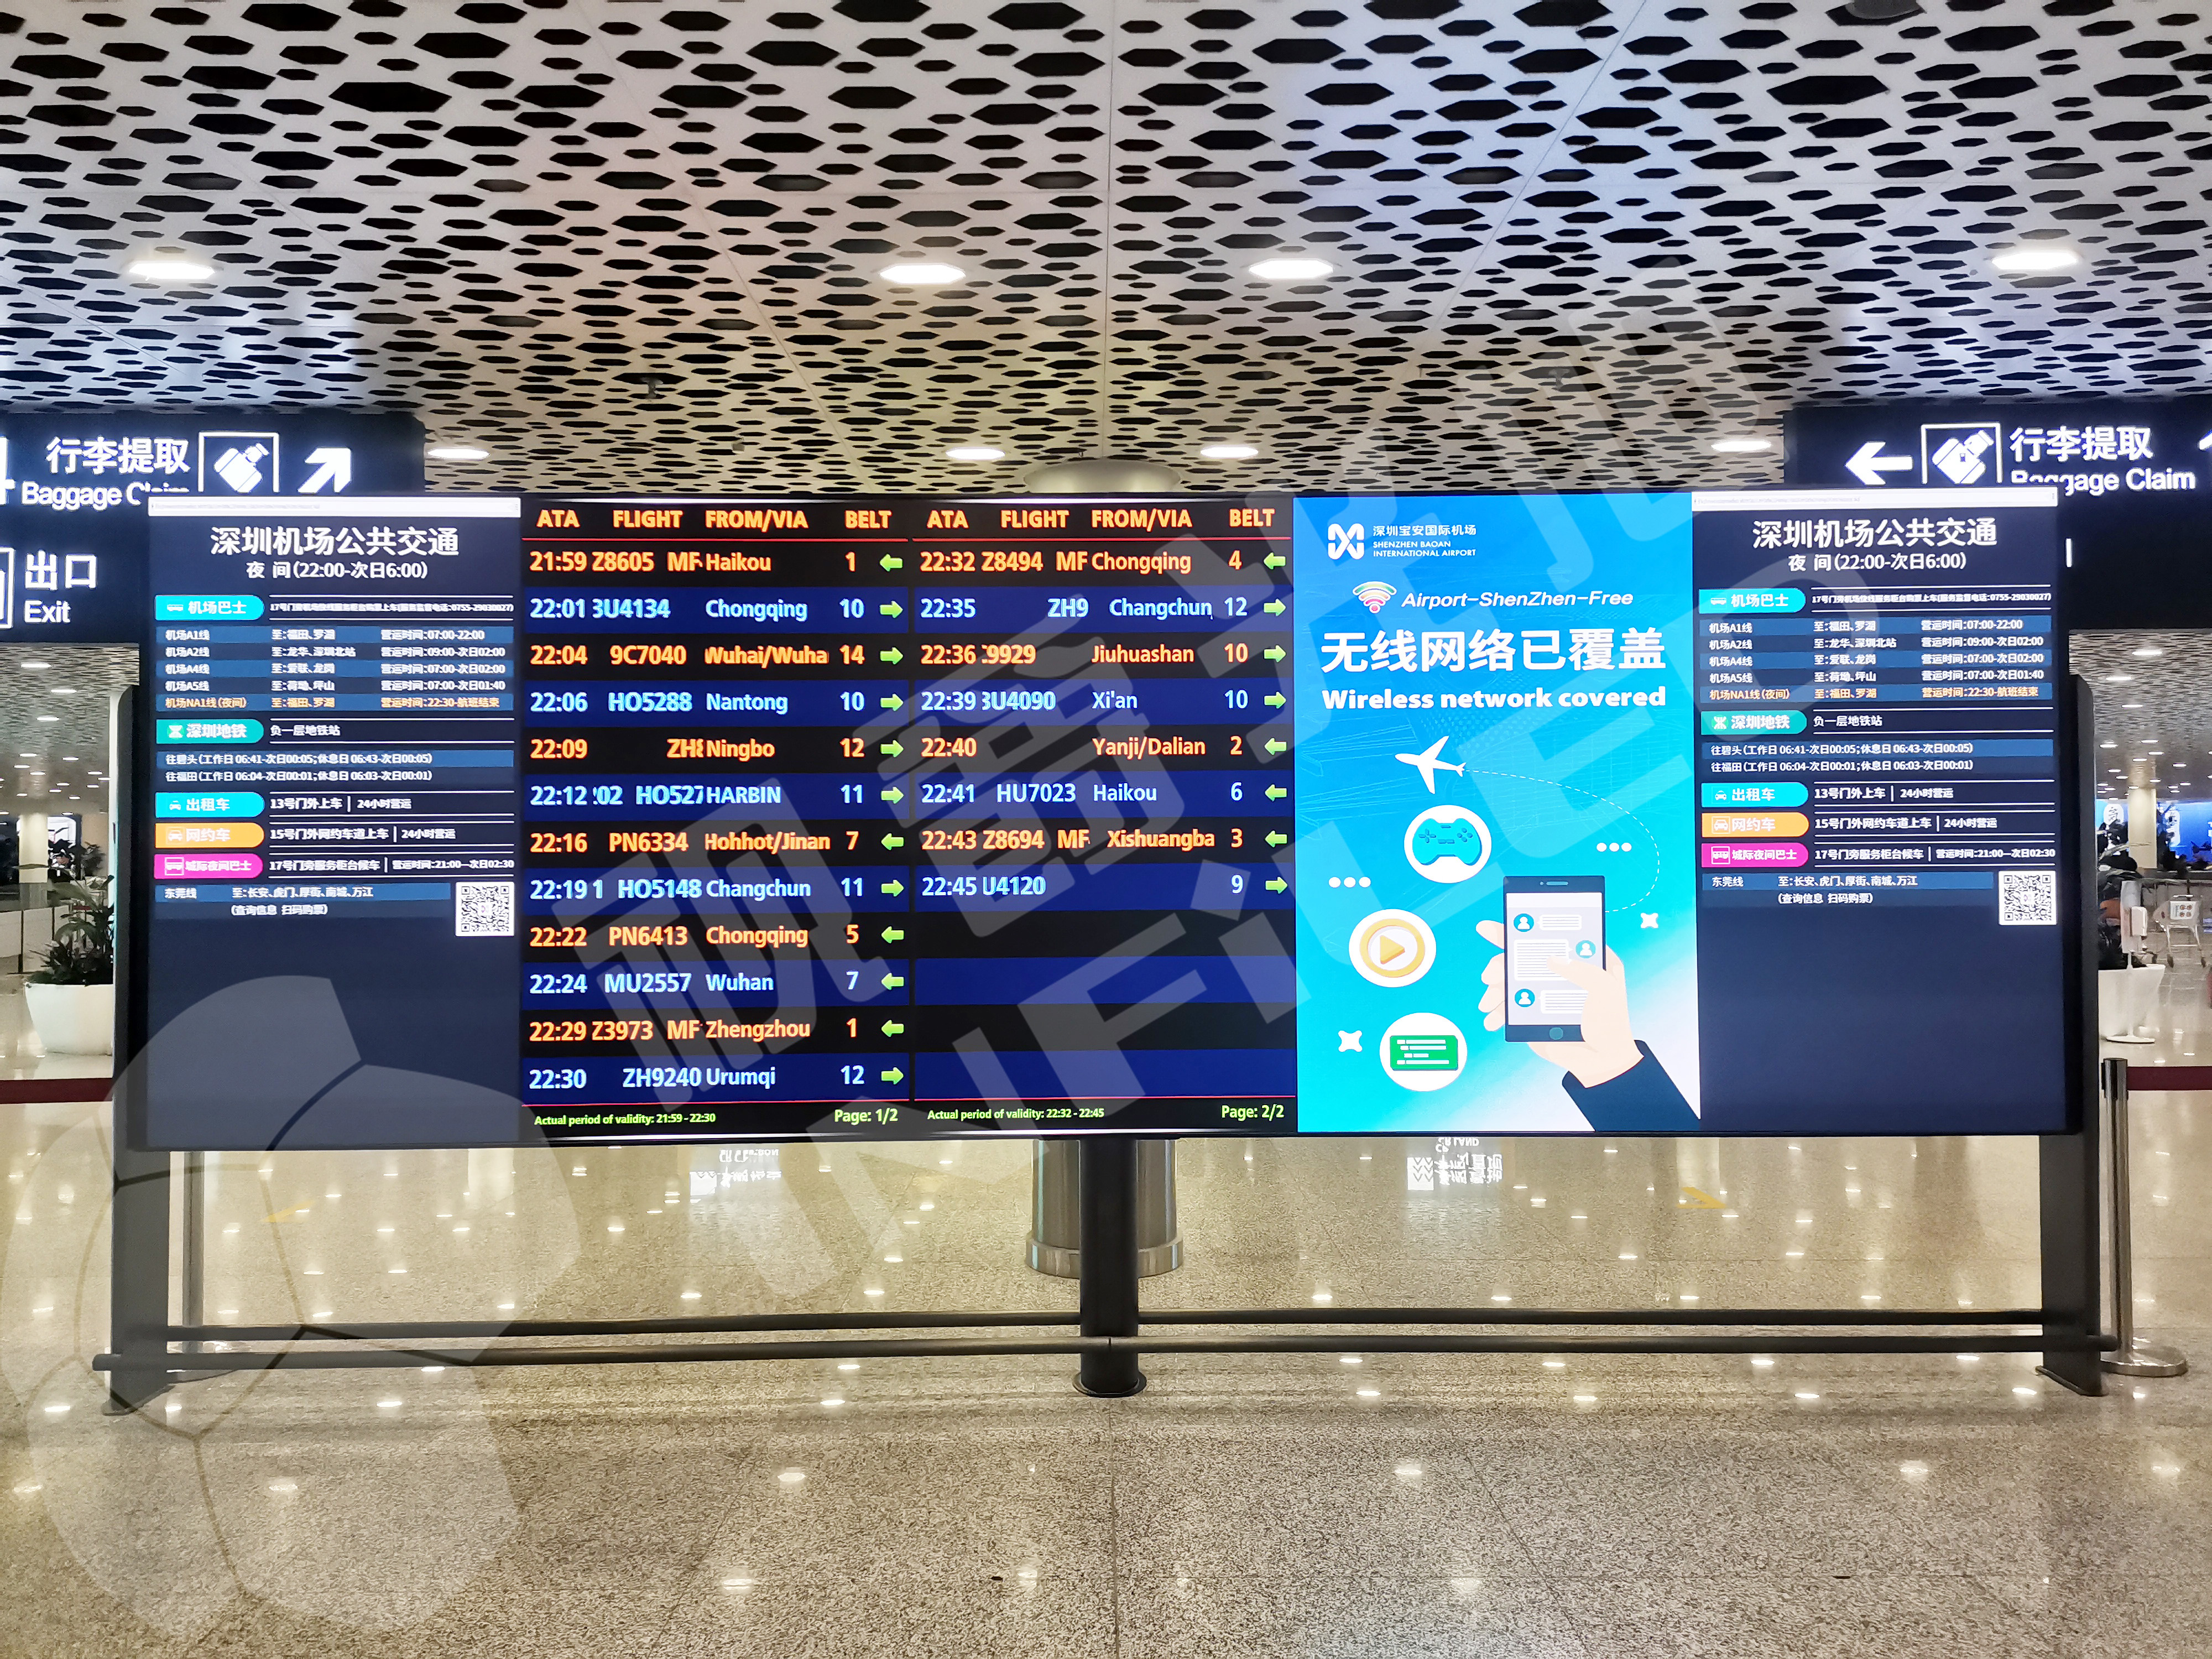 深圳宝安国际机场到达出口安装有尺寸为6*2m的行李引导航LED显示屏